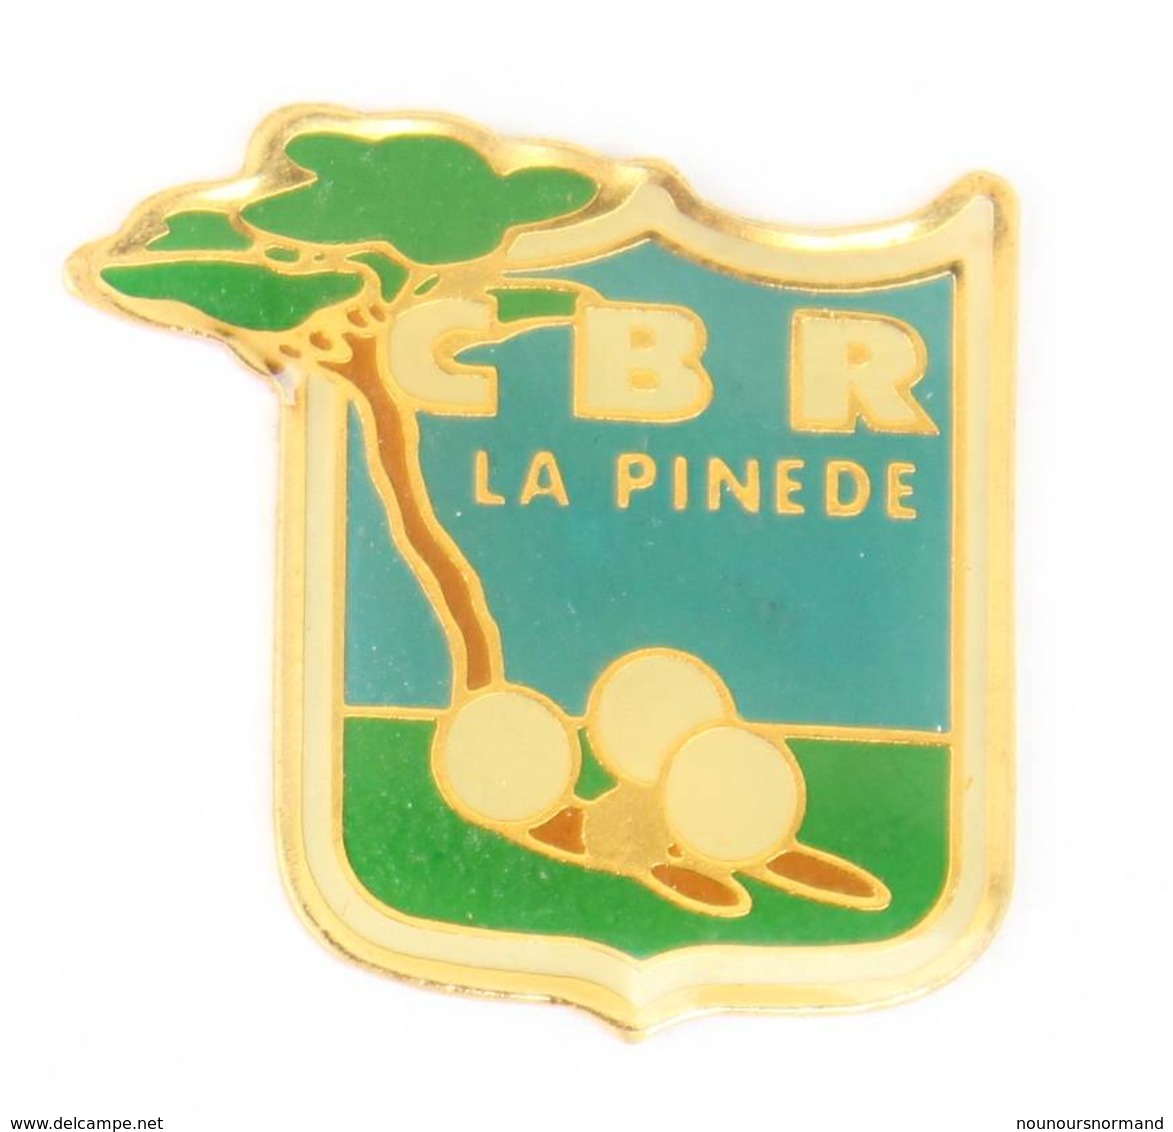 Pin's C.B.R ( Cercle Bouliste Rochevillois )  LA PINEDE - Boules De Pétanque - Pin Parasol - J069 - Pétanque